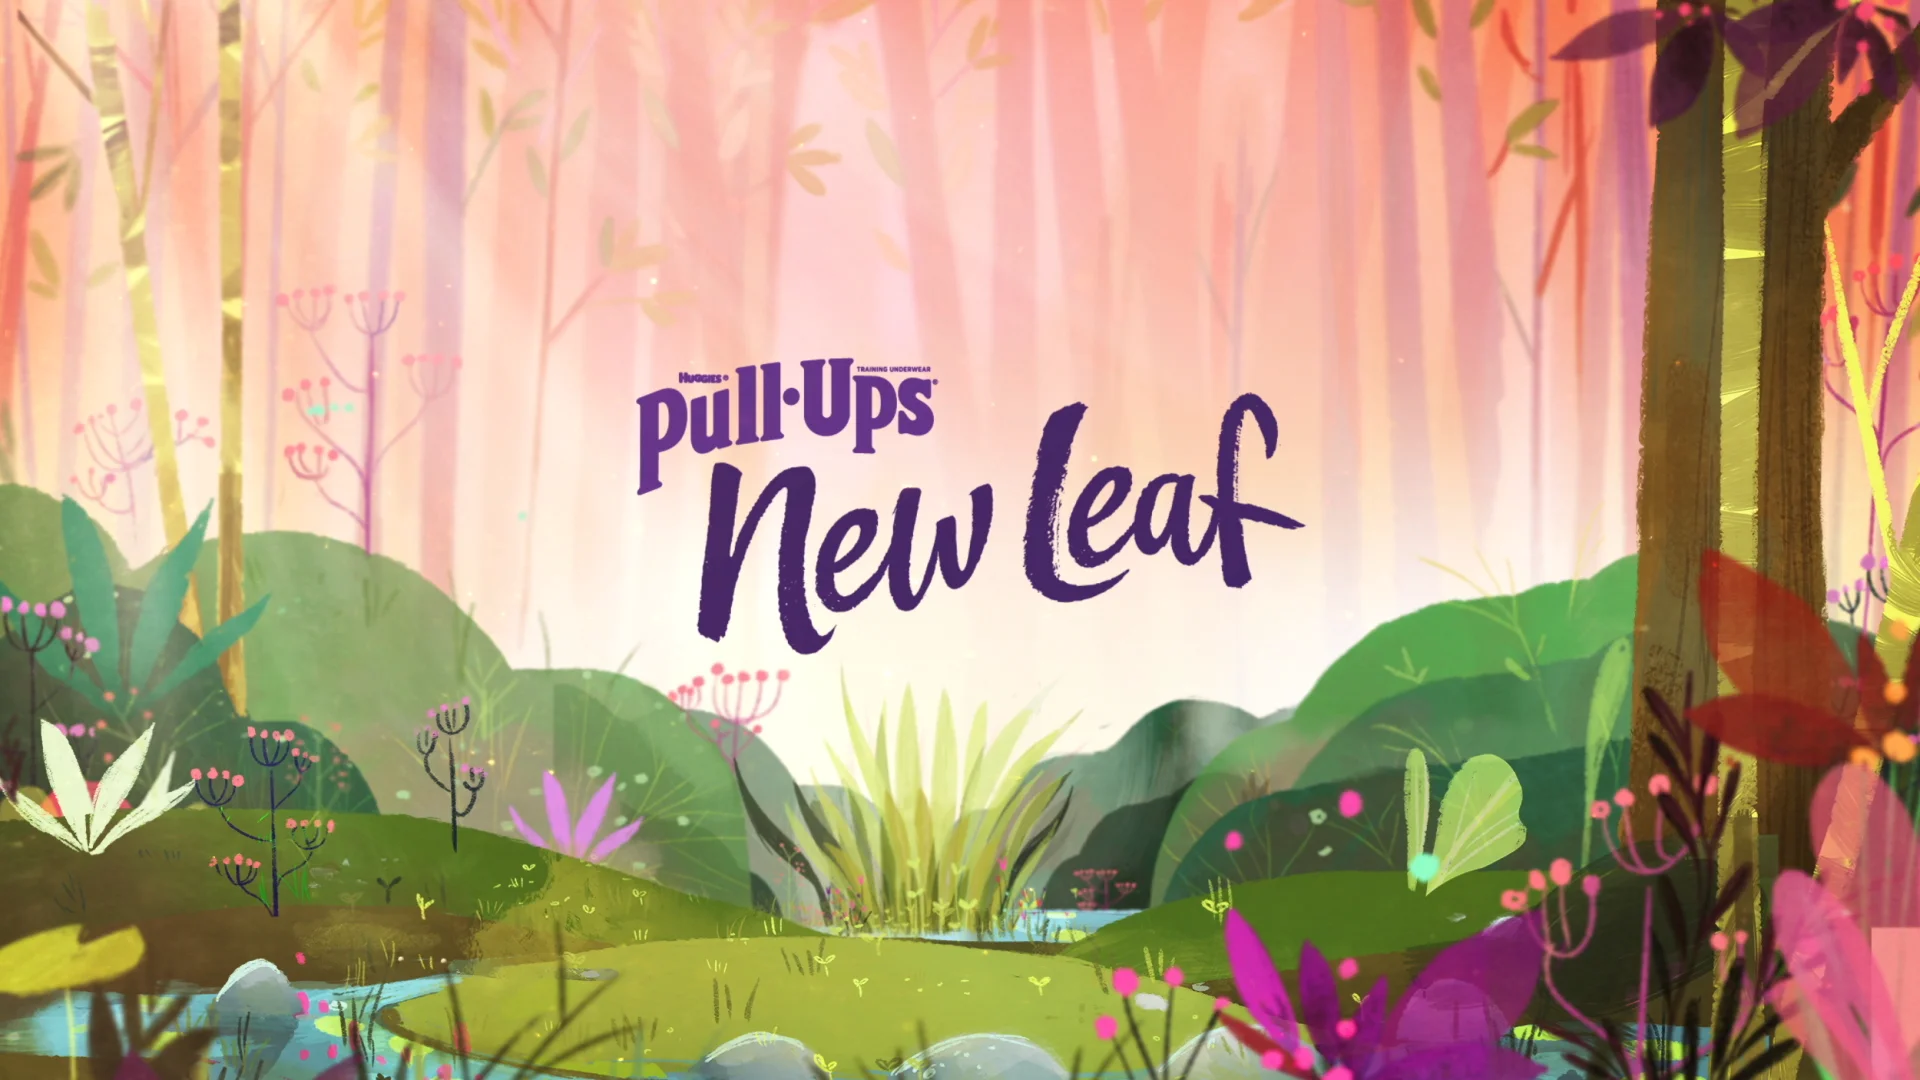 Pull-ups New Leaf on Vimeo